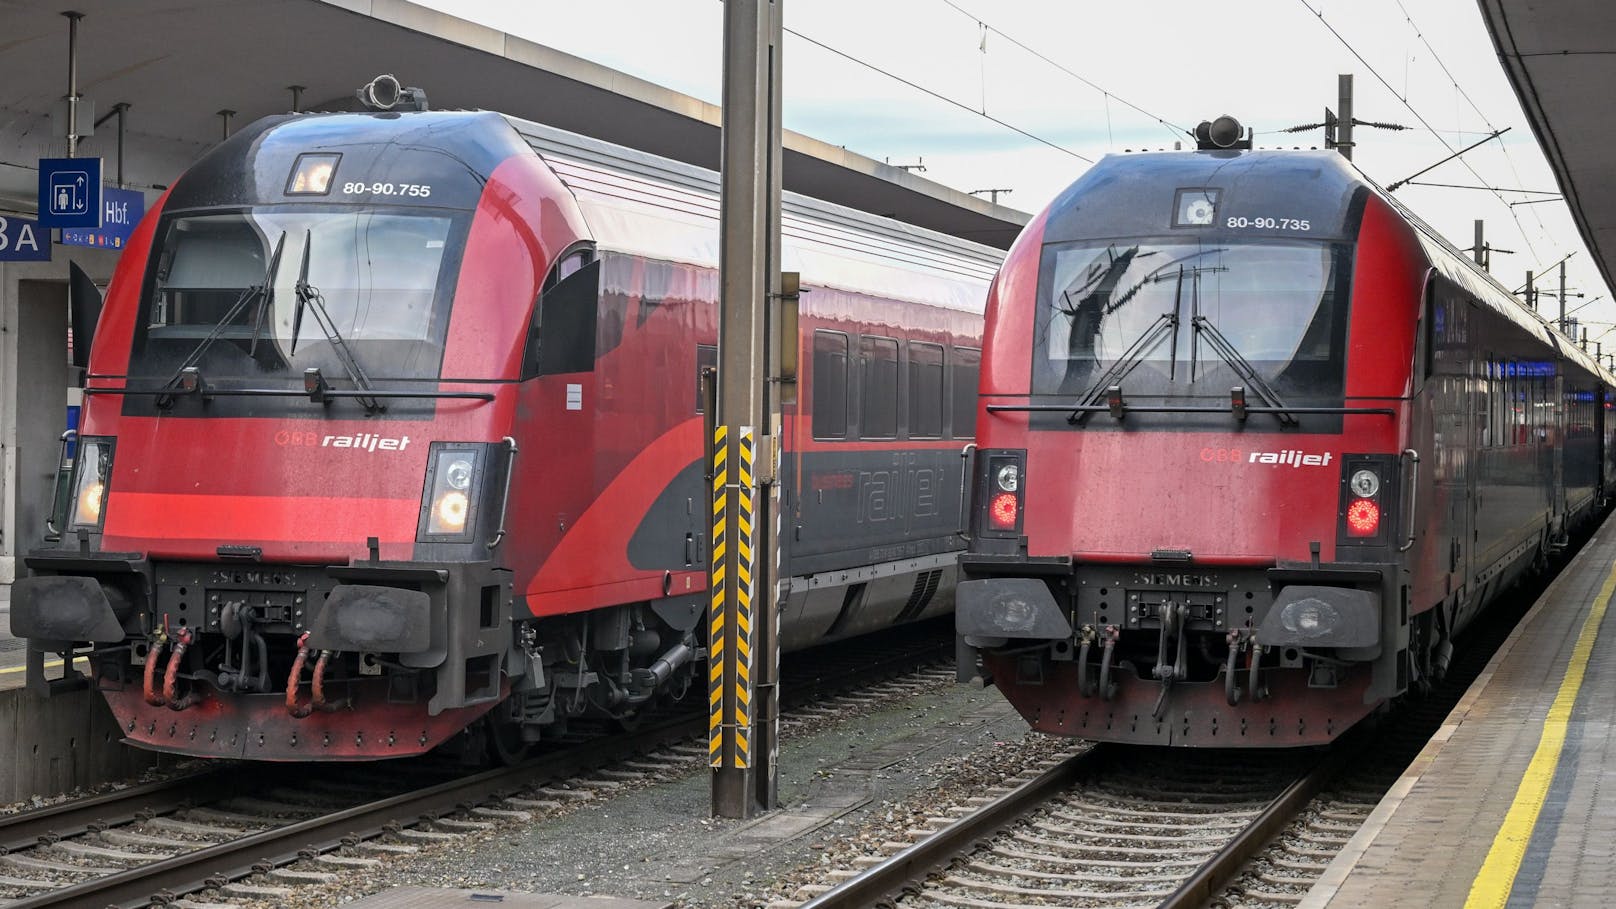 Passagier ohne Ticket verliert in ÖBB-Zug die Nerven